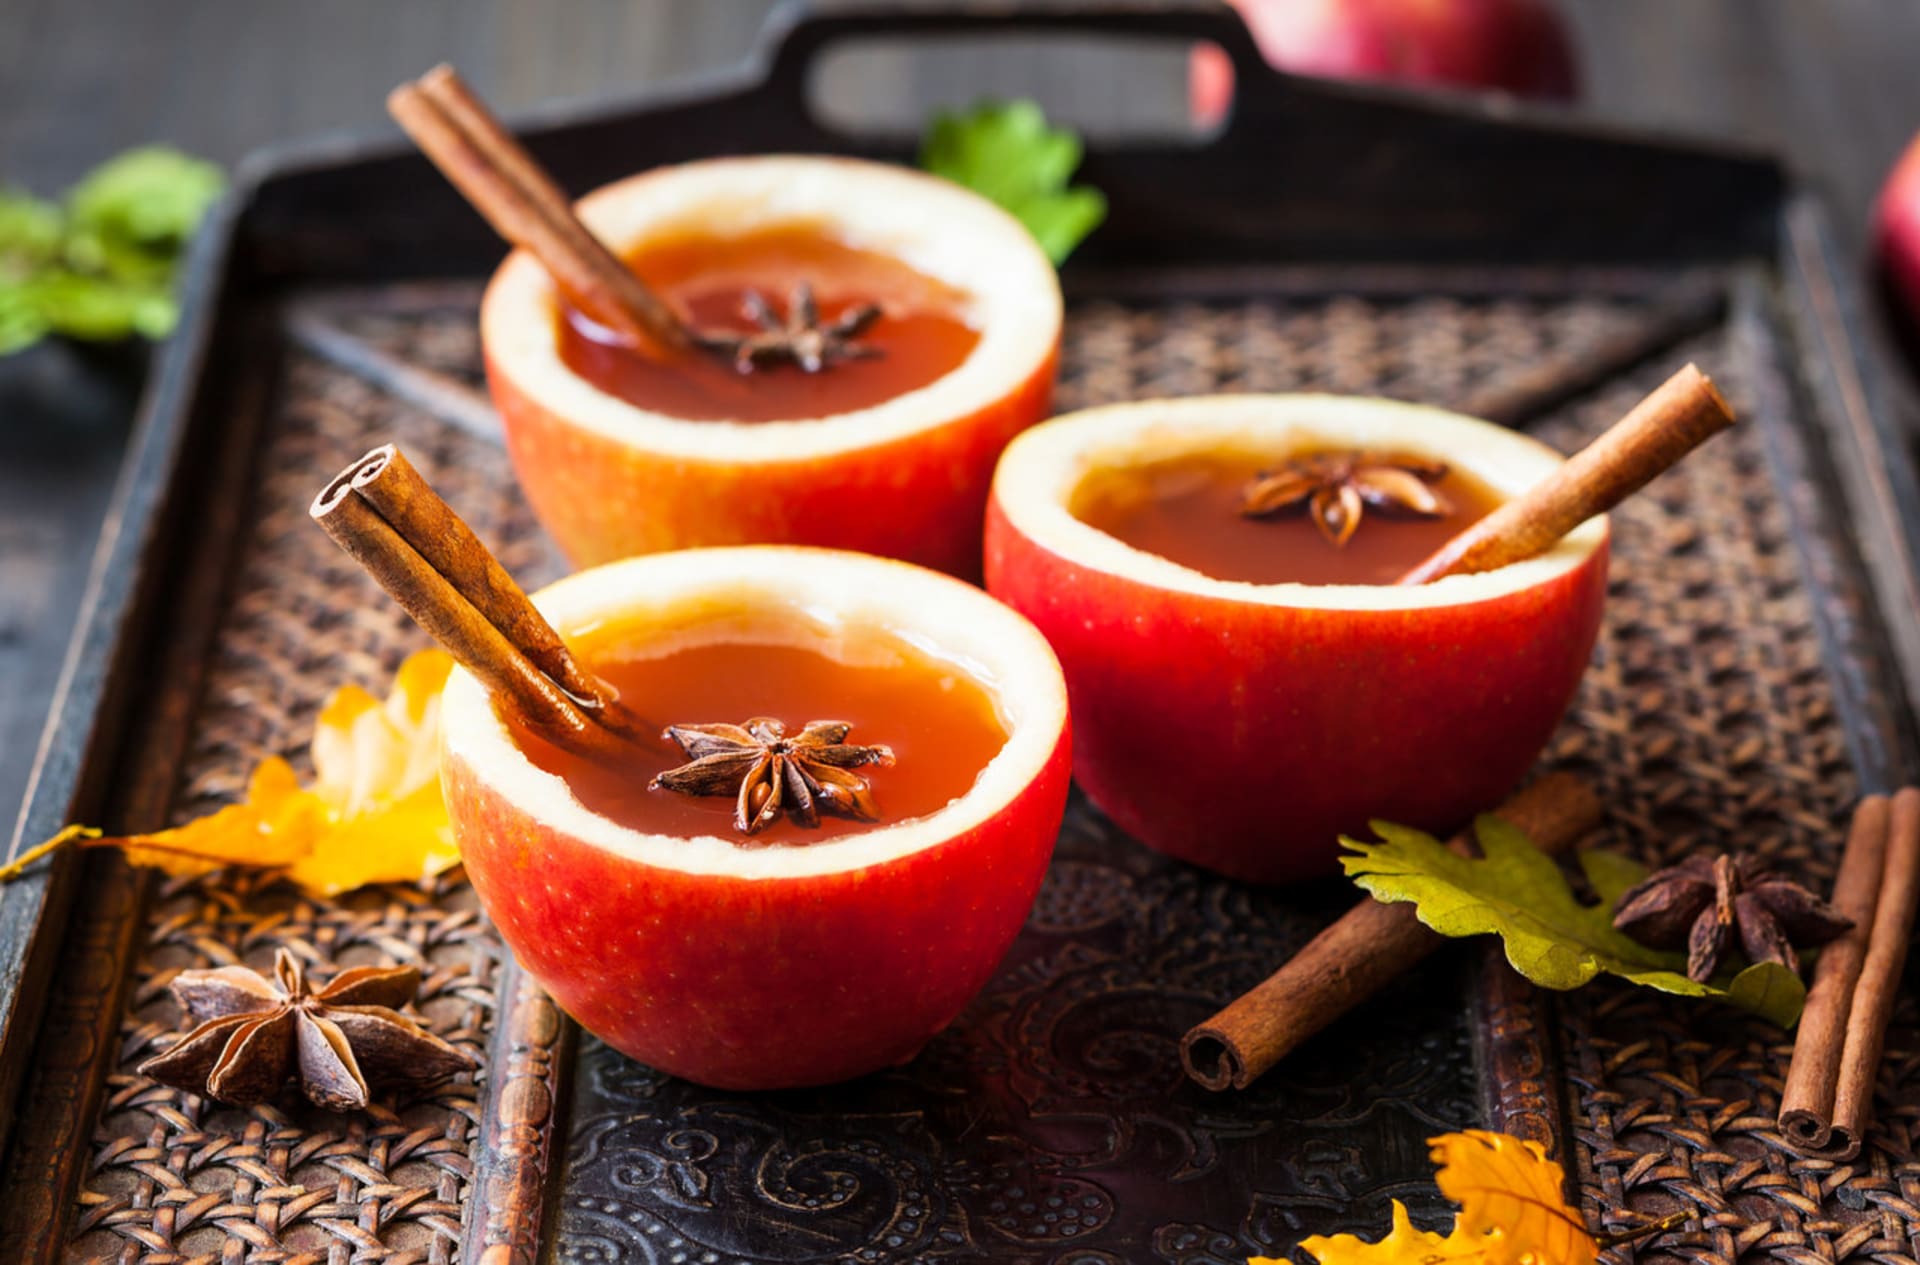 Horký cider můžete podávat v hrníčku nebo stylově, ve vydlabaných jablkách